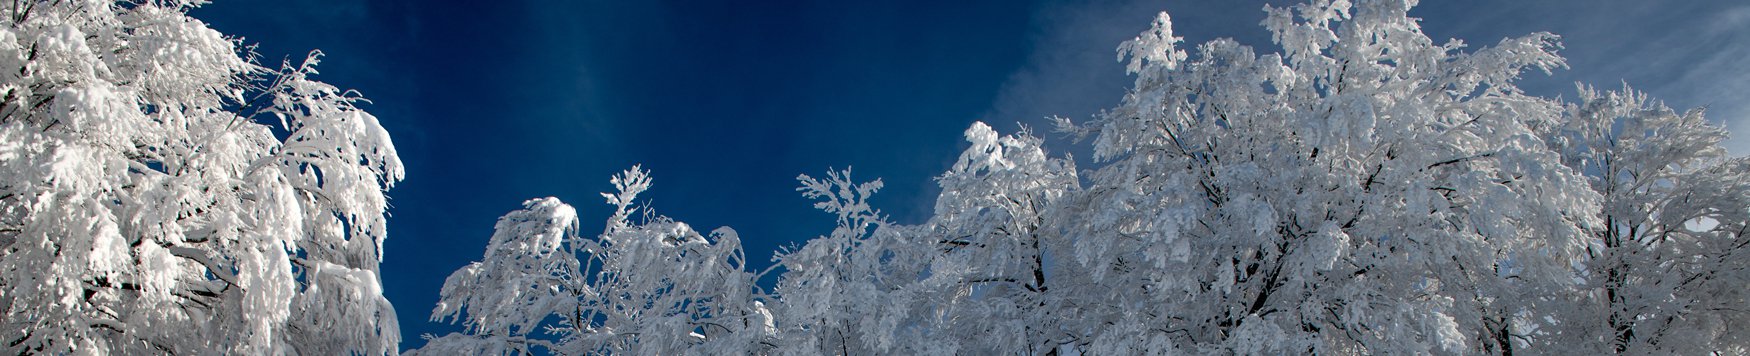 SnowJapan: Ski area news from around Japan